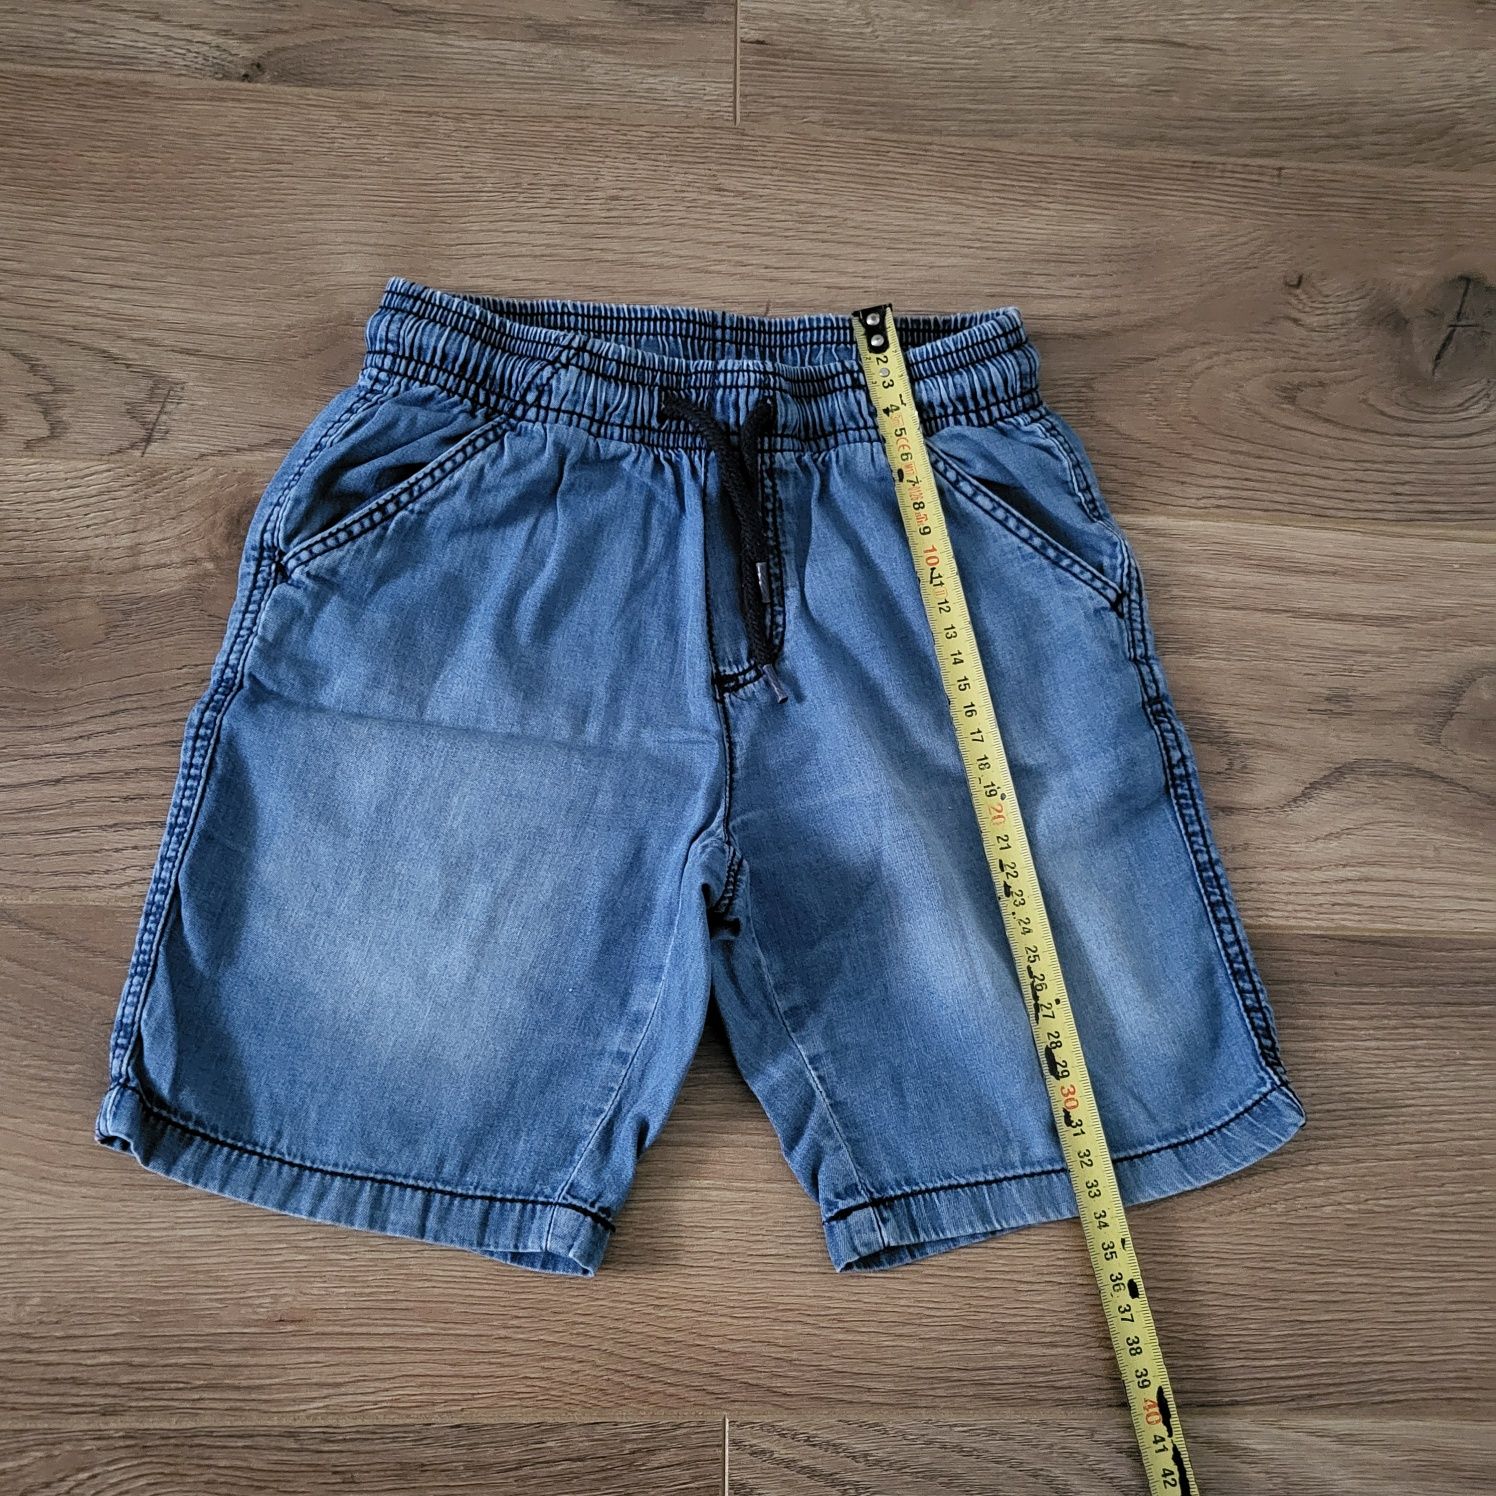 Spodenki krótkie chłopięce r.110/116 Lupilu, materiał cienki jeans